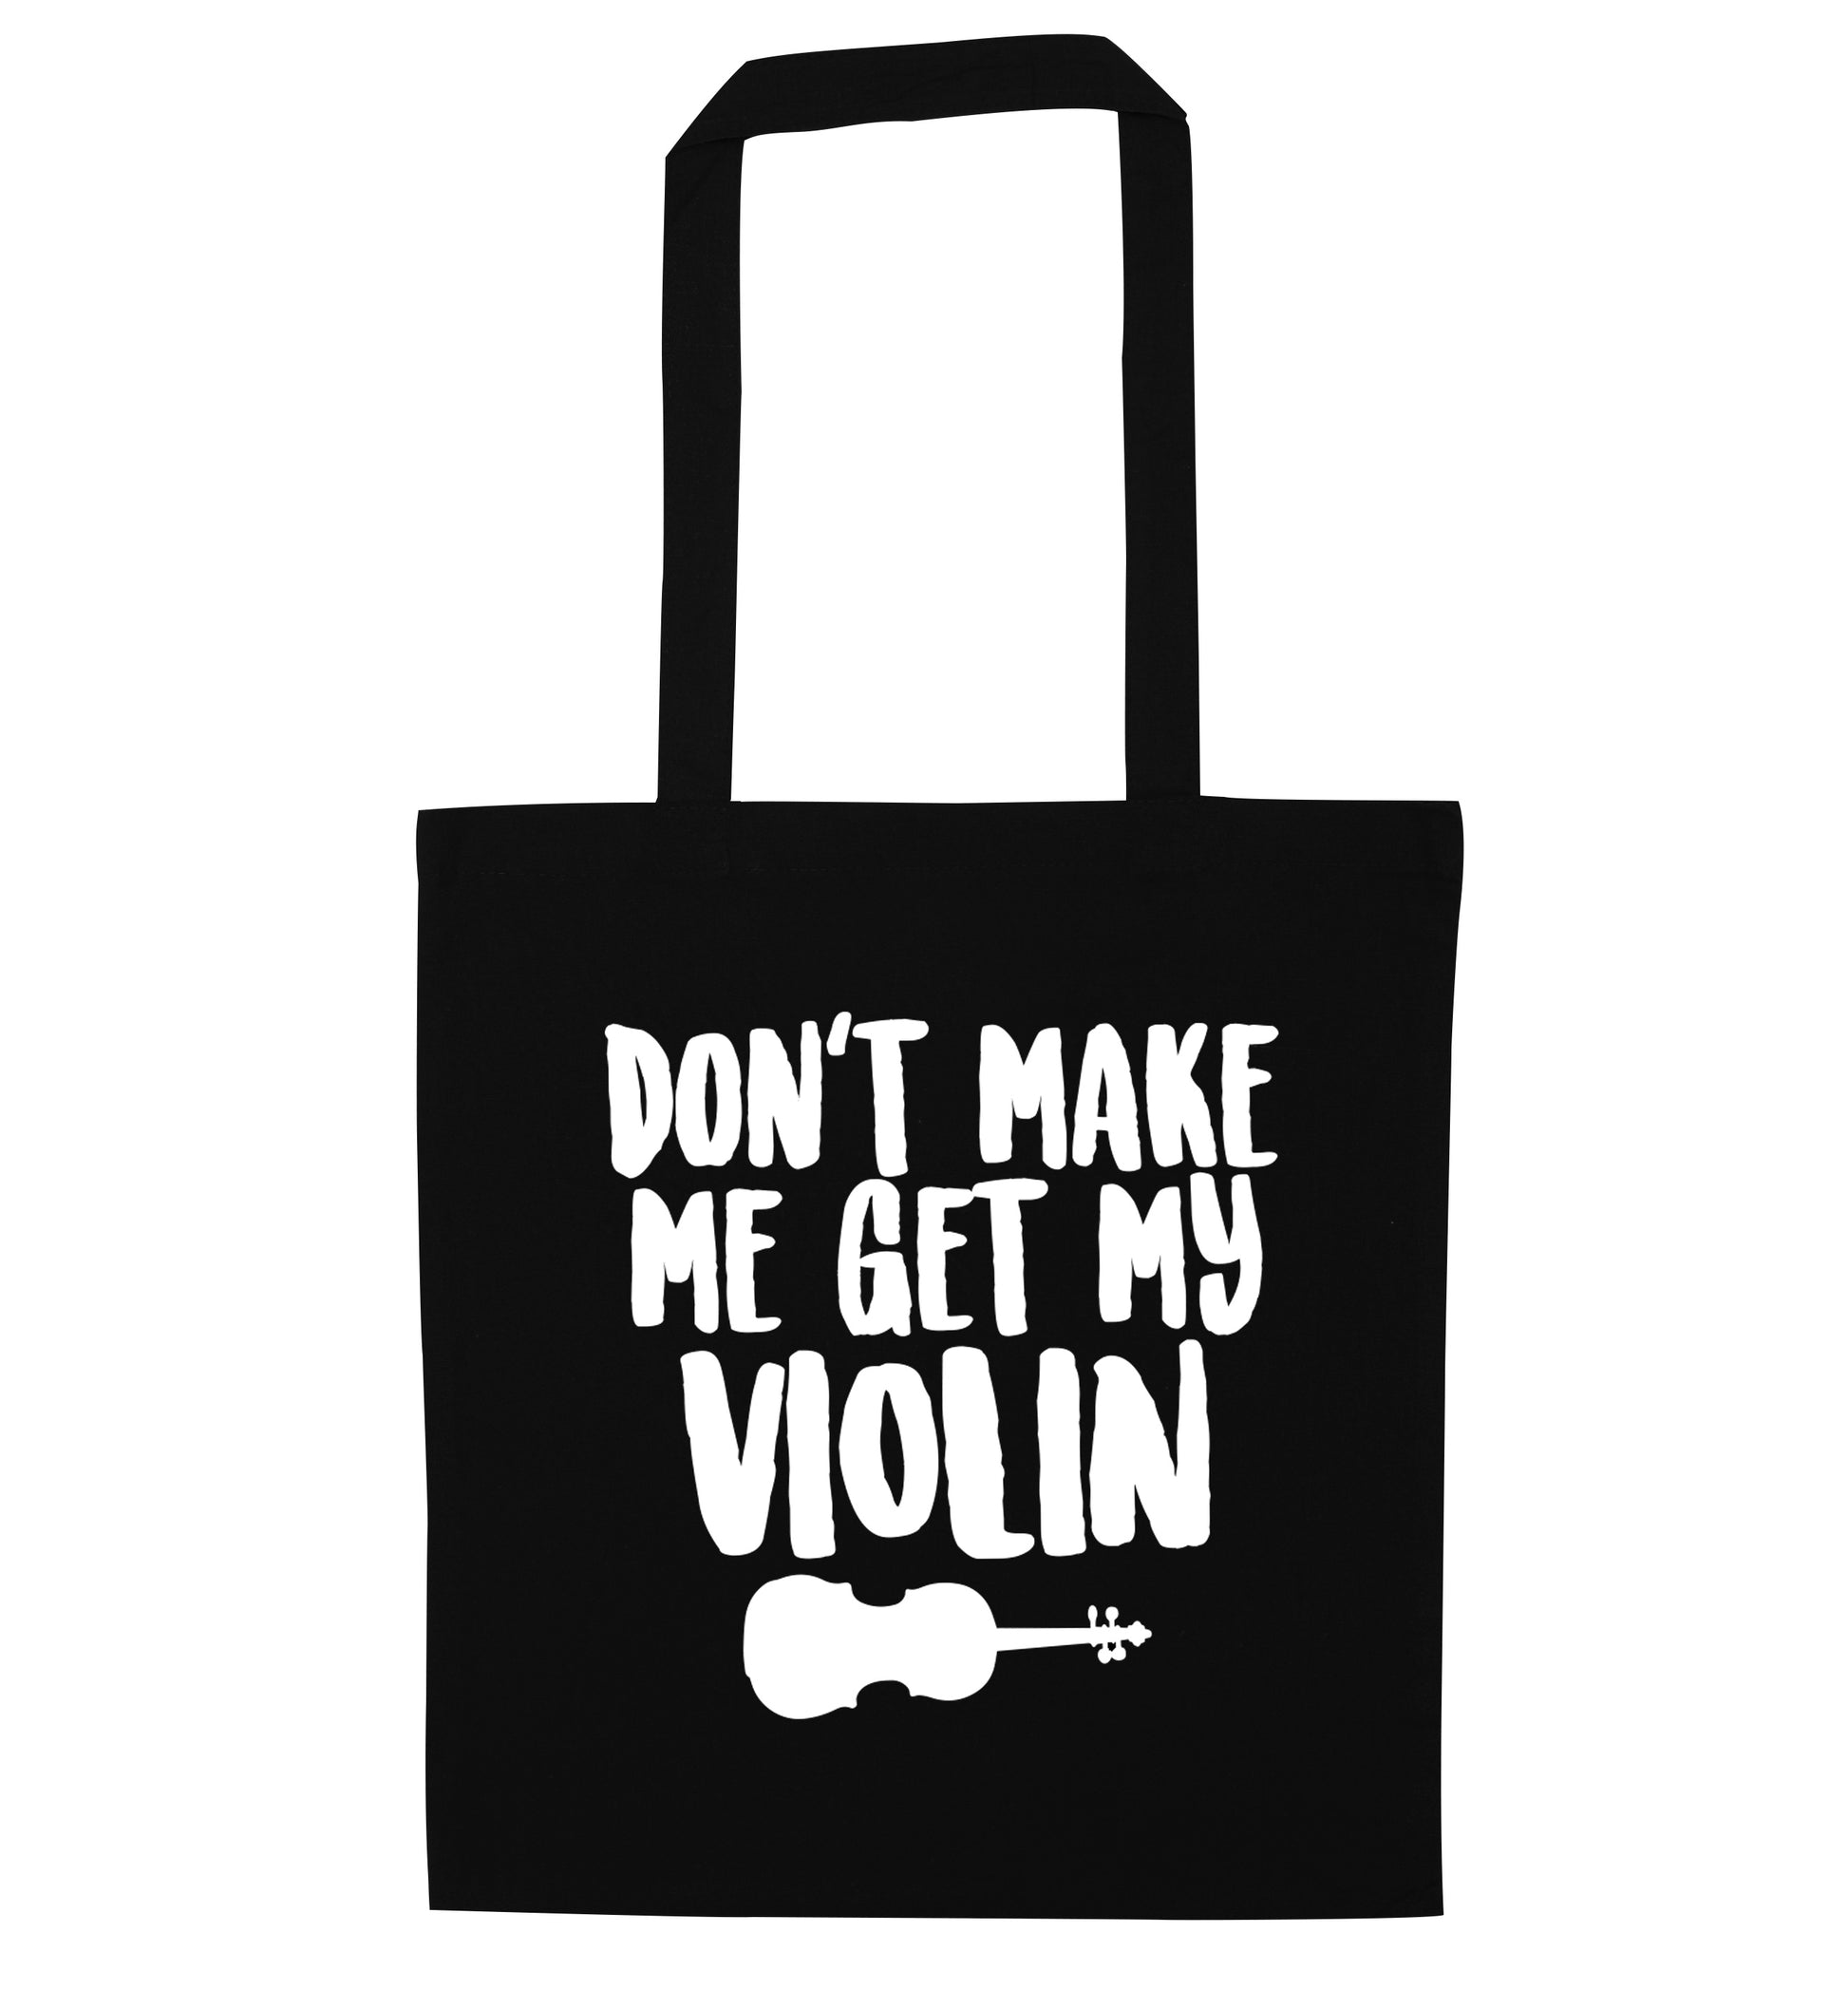 Don't make me get my violin black tote bag